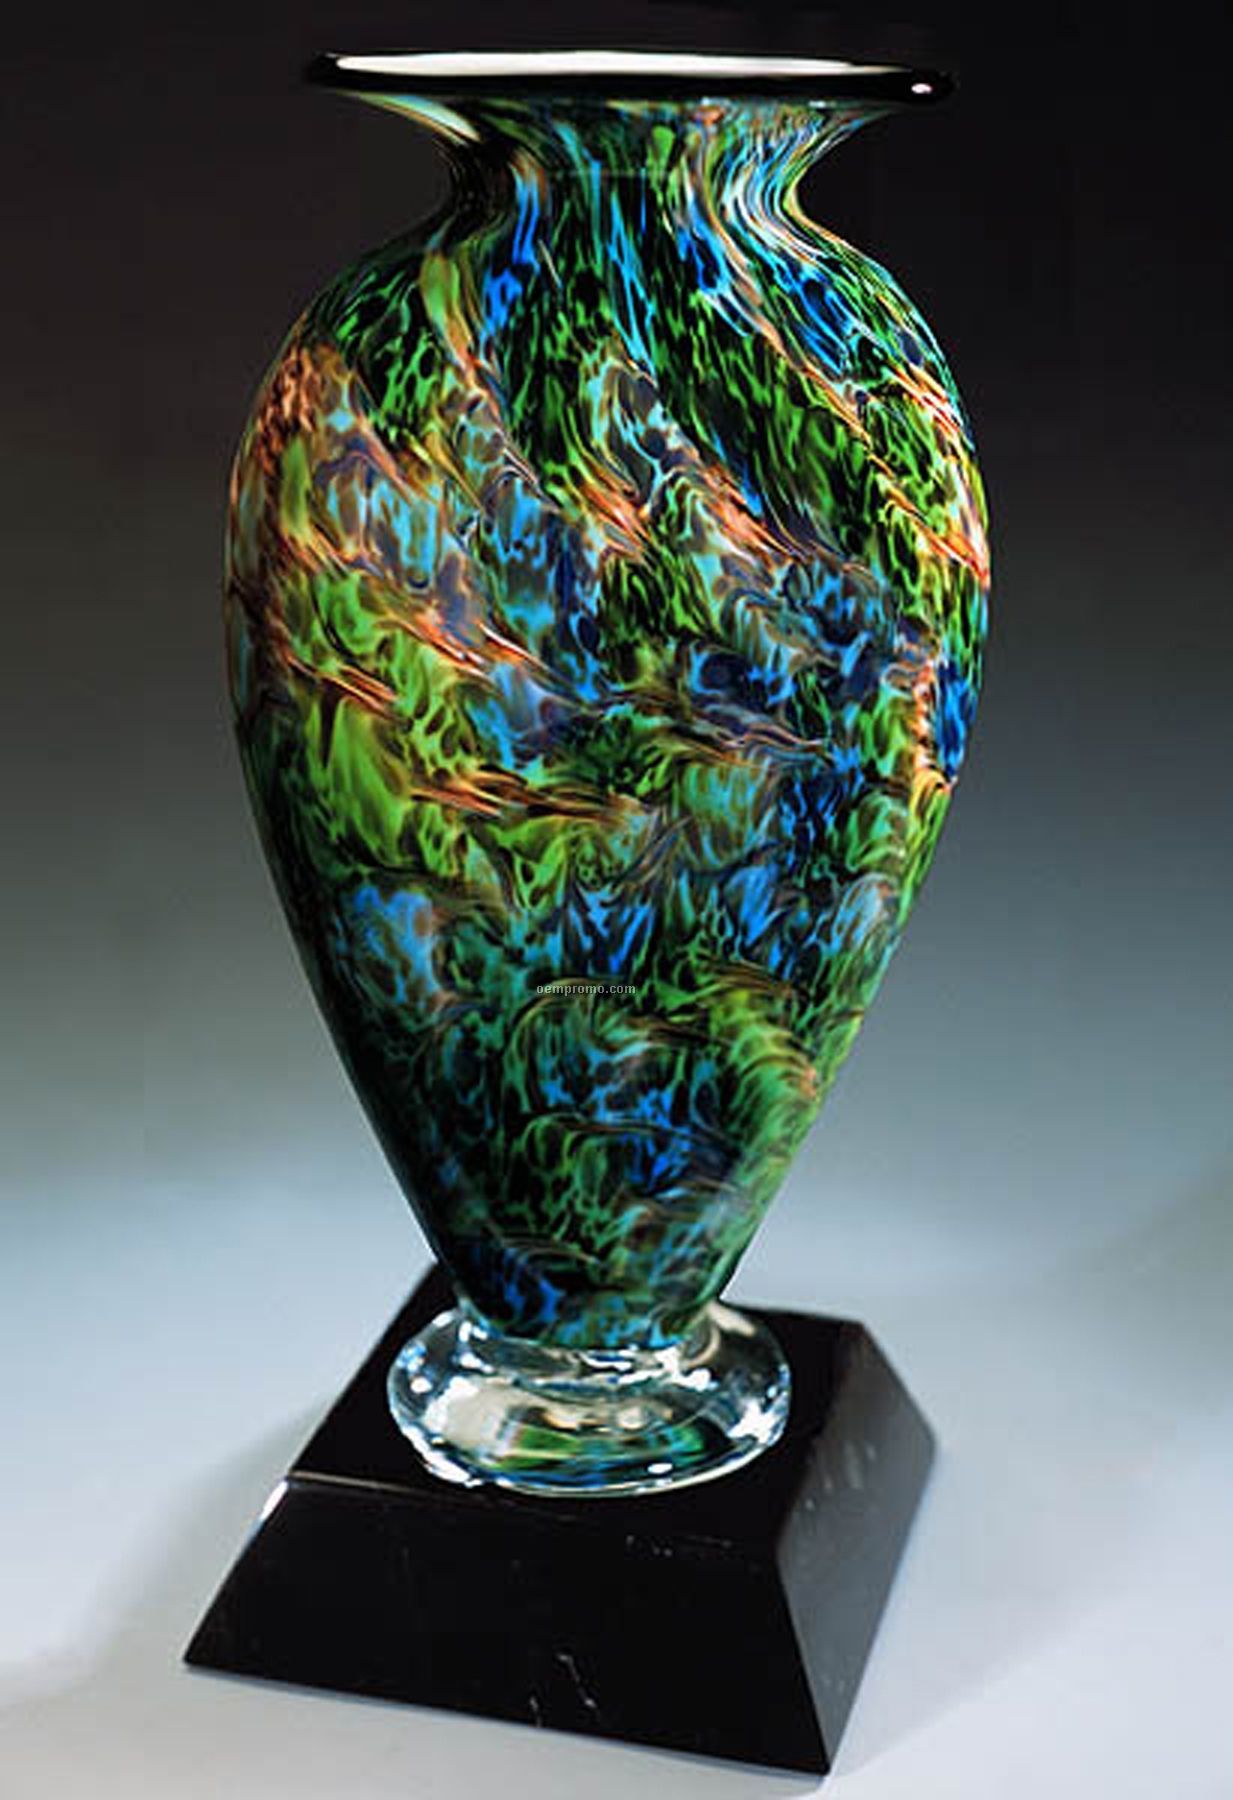 Jade Glen Mercury Sculpture Award W/ Marble Base (6.5